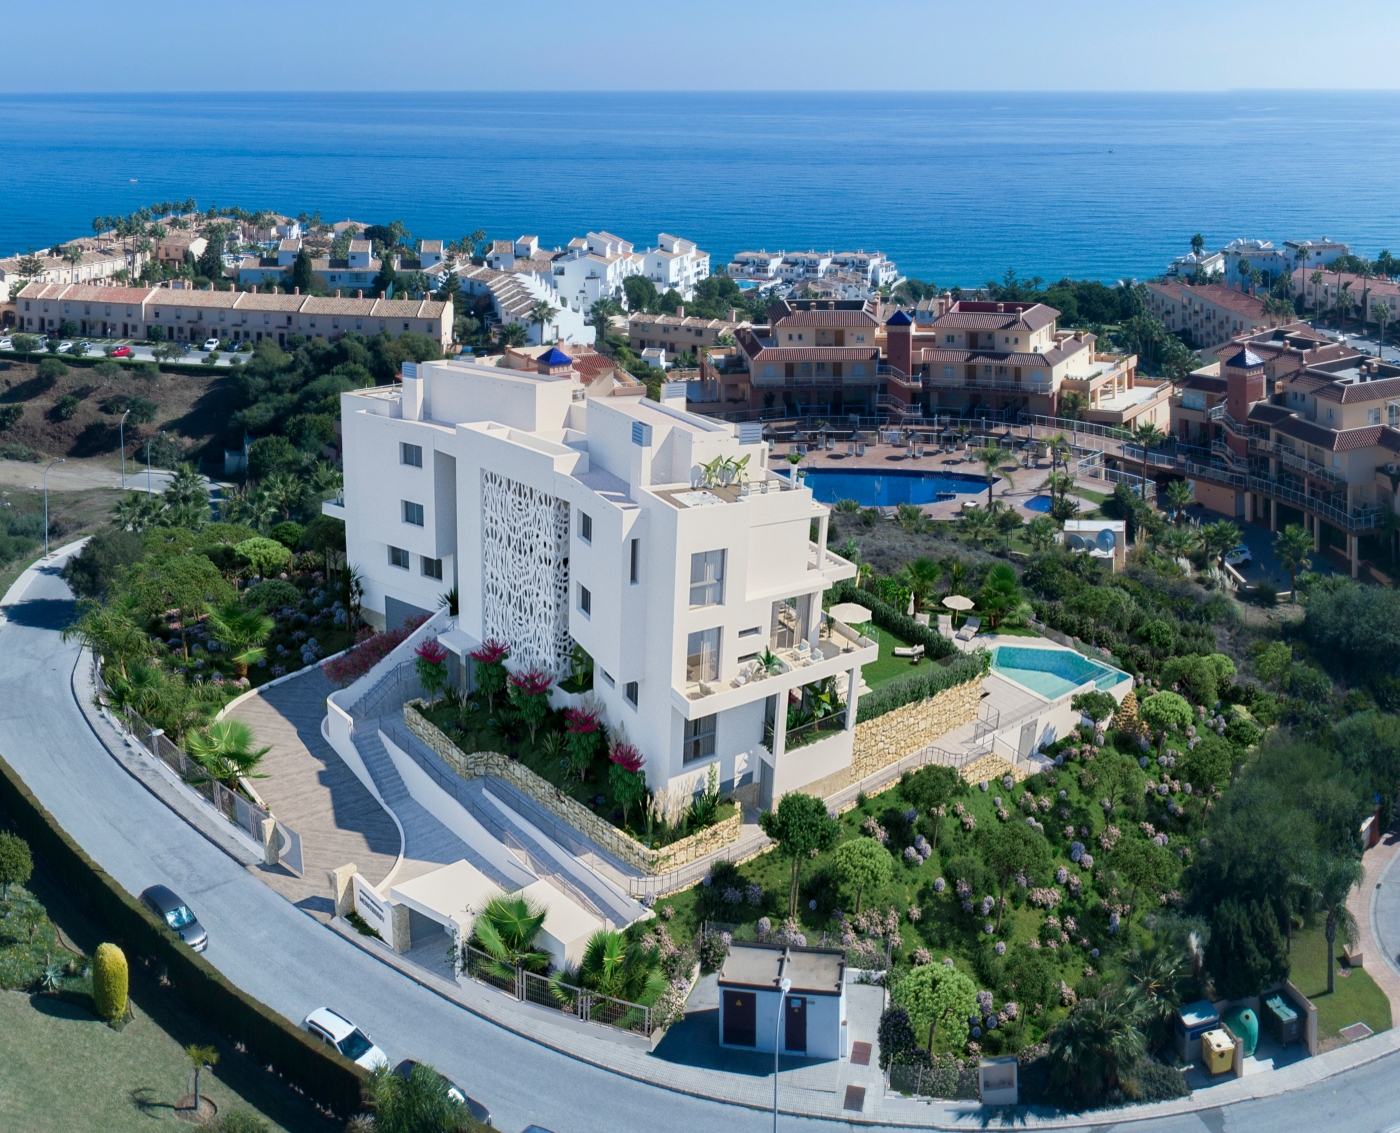 Exclusieve luxe appartementen in Mijas Costa met uitzicht op zee, met terras, gemeenschappelijk zwembad en parkeerplaats